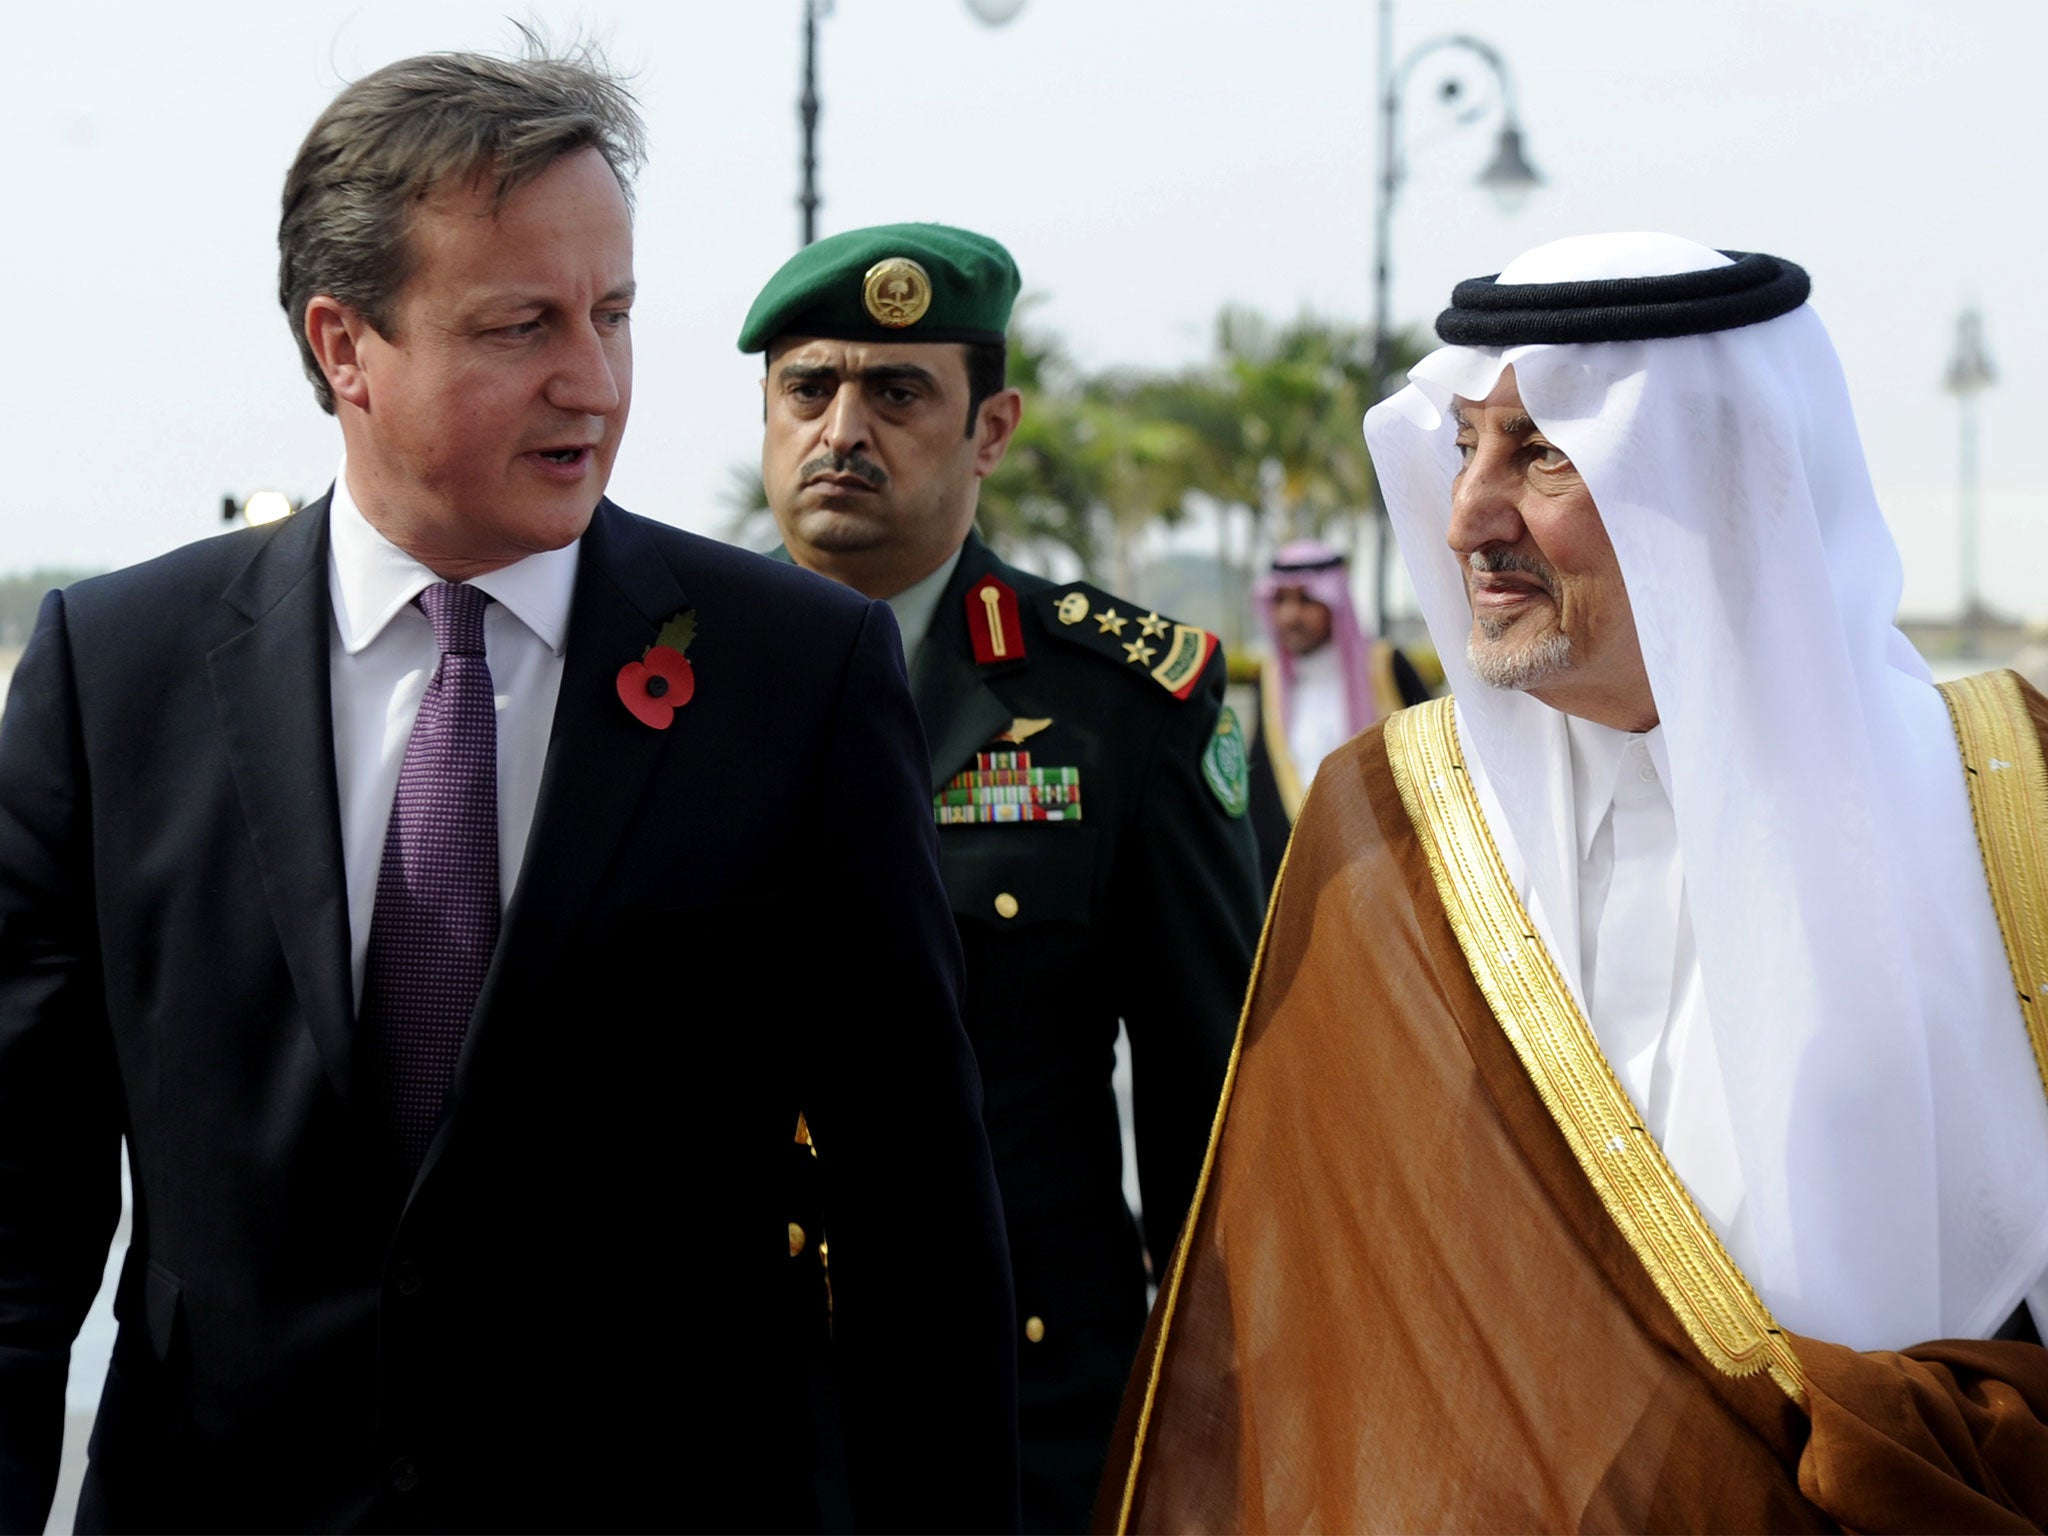 Prince Charles with Prince Khalid bin Faisal bin Abdulaziz in 2012